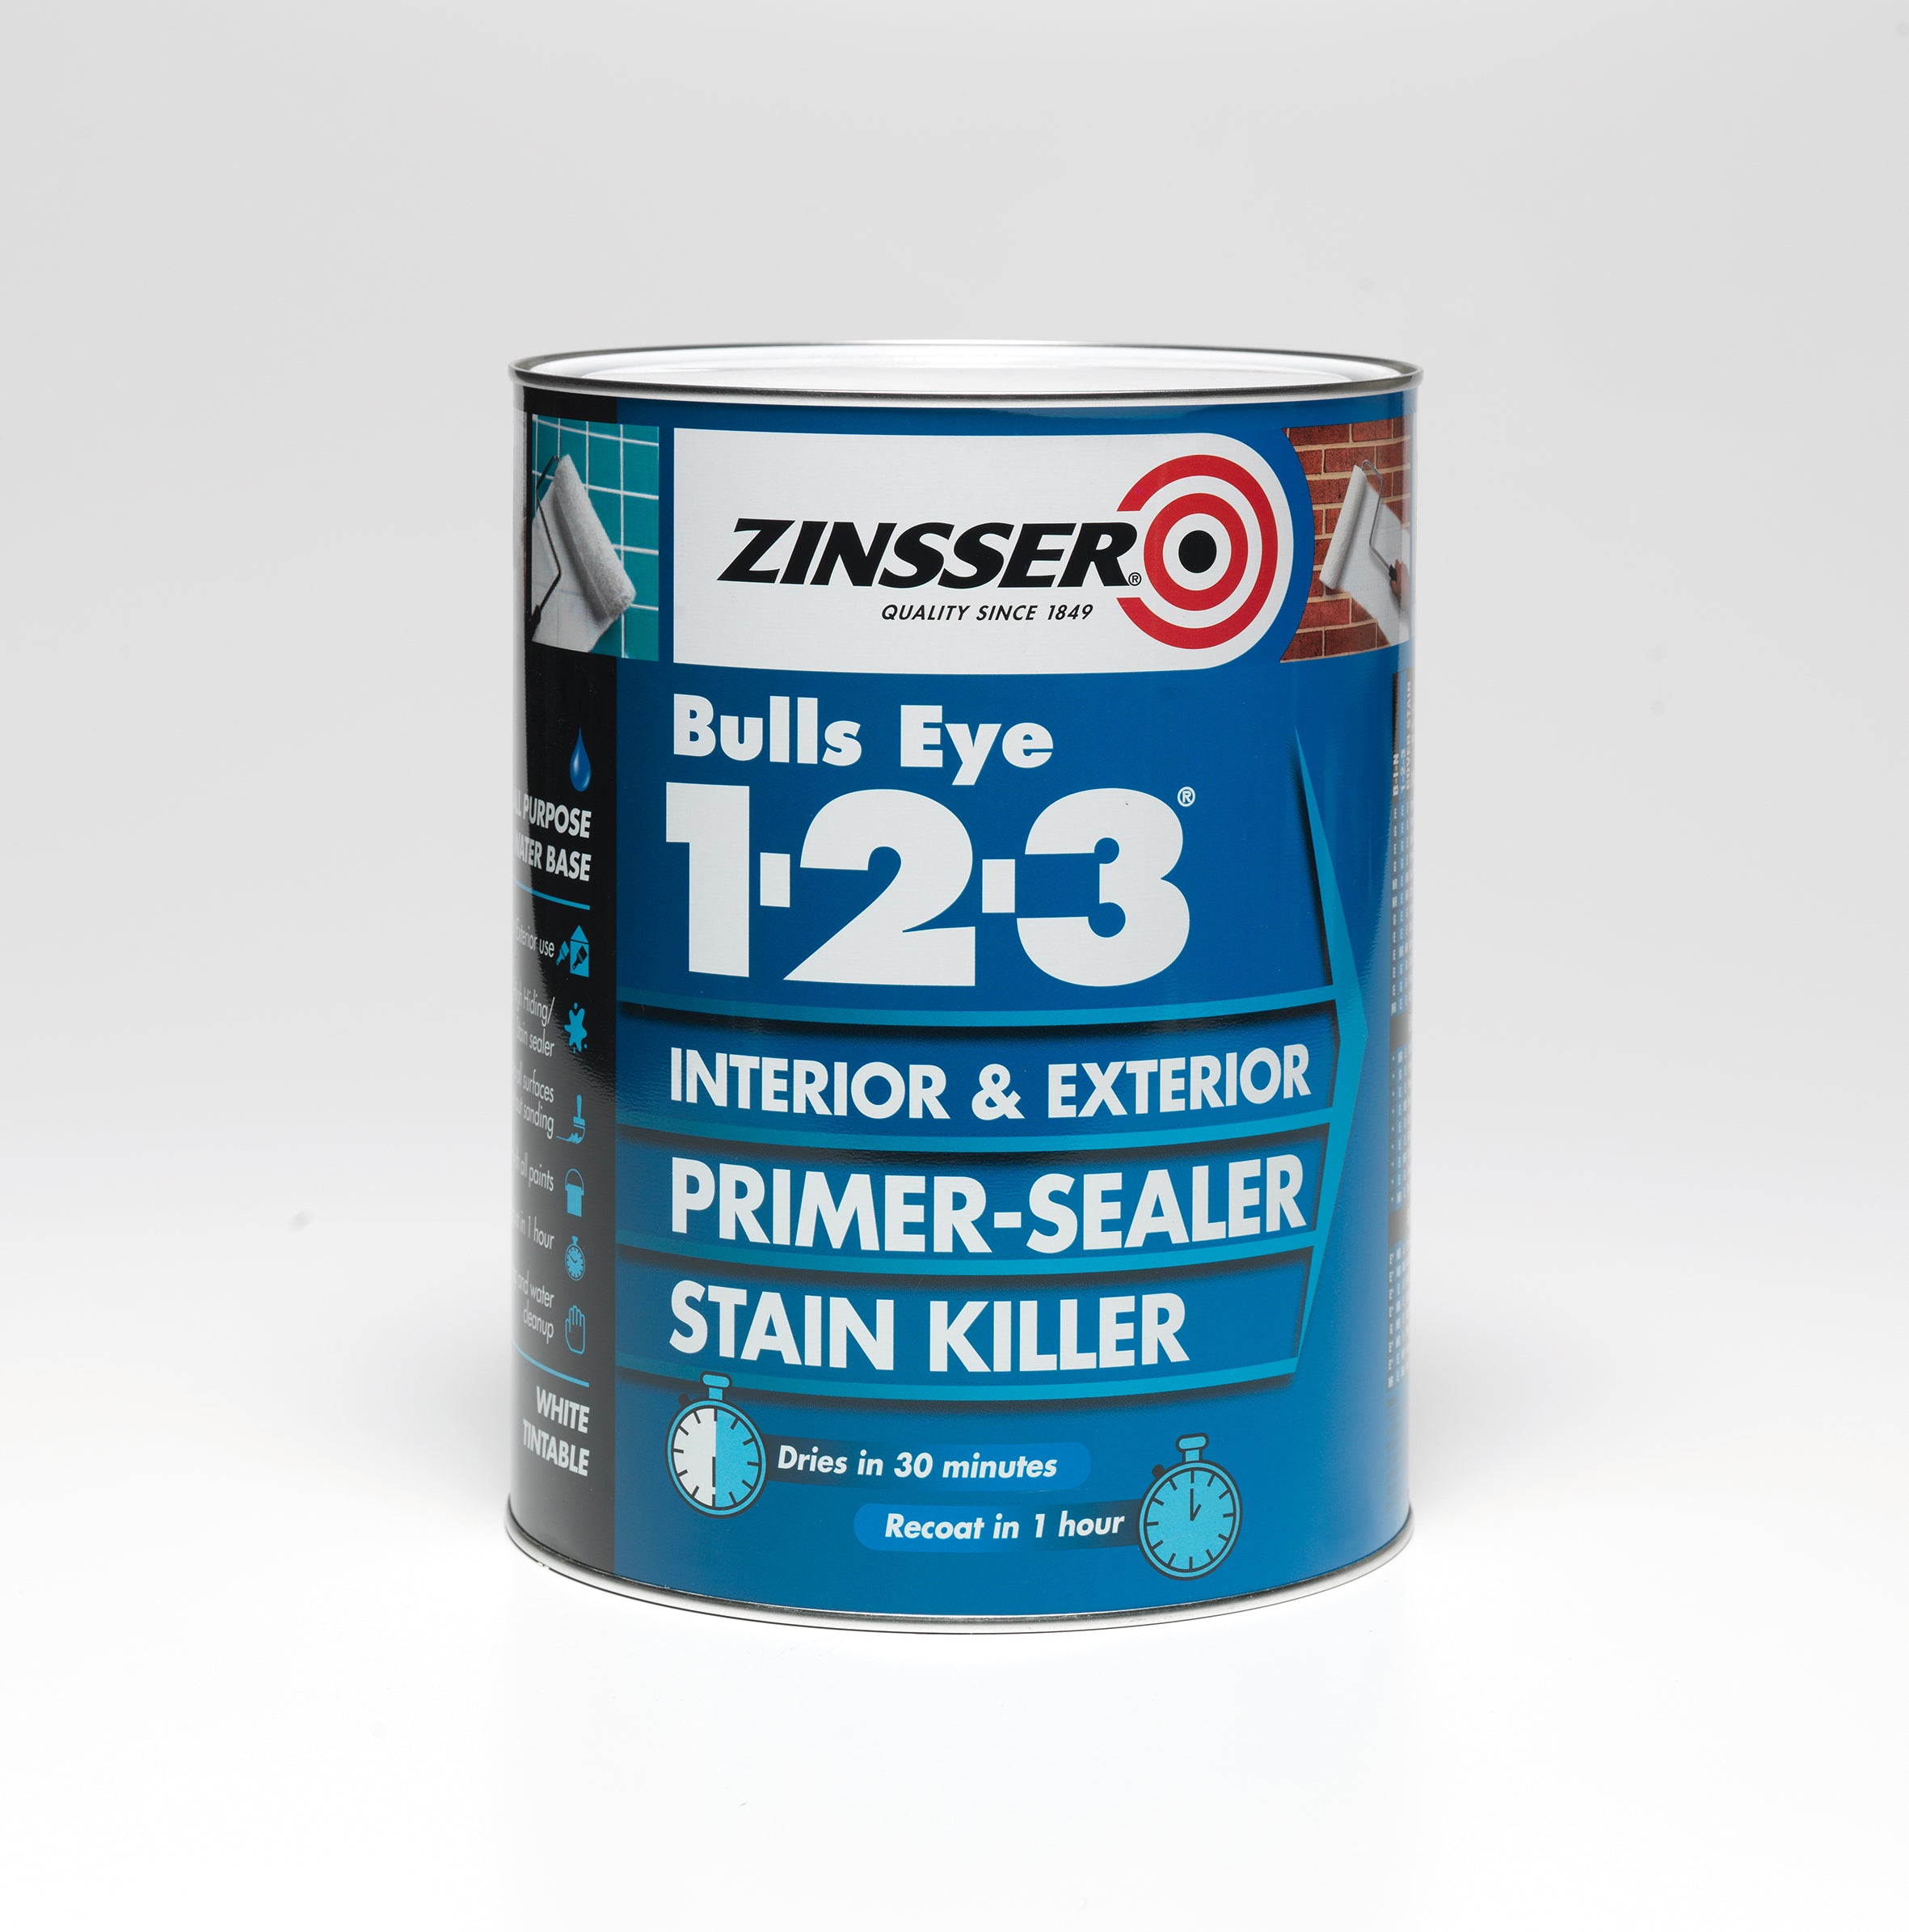 Zinsser Bulls Eye 1.2.3 Primer-Sealer